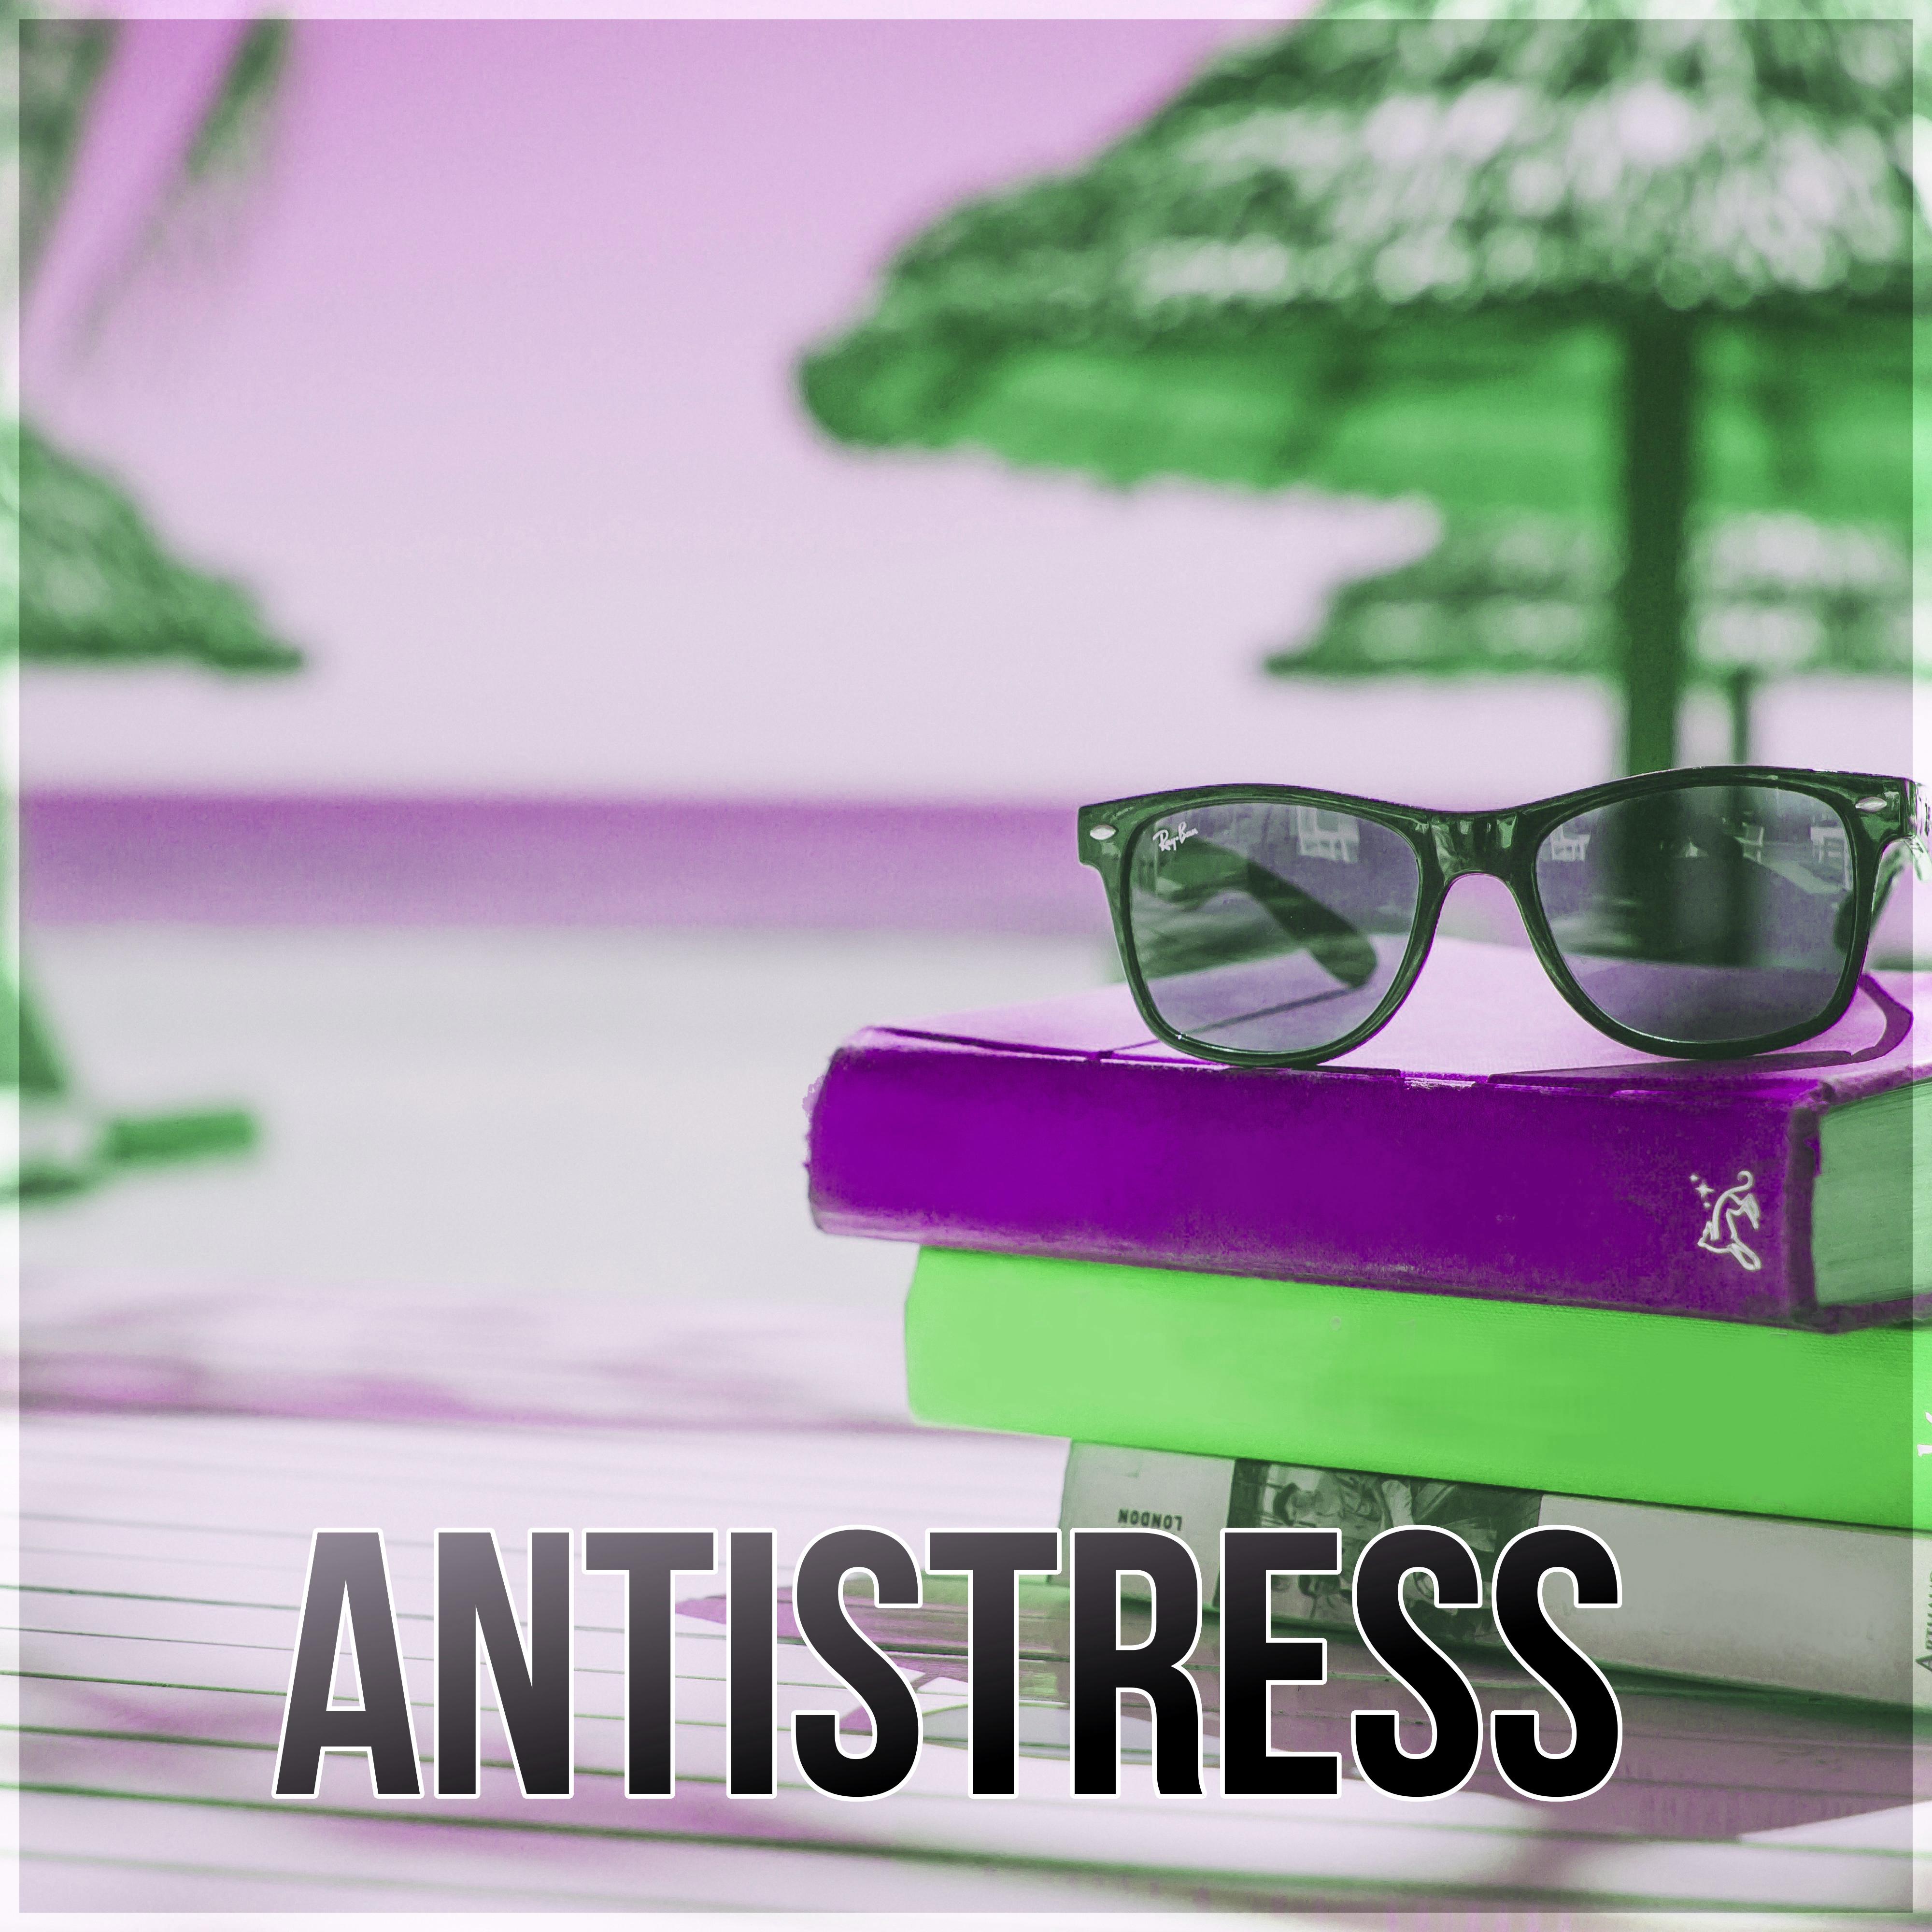 Antistress – Canciones para Relajarse y Meditar, Musica New Age de Reiki & para Meditacion, Musica de Fondo